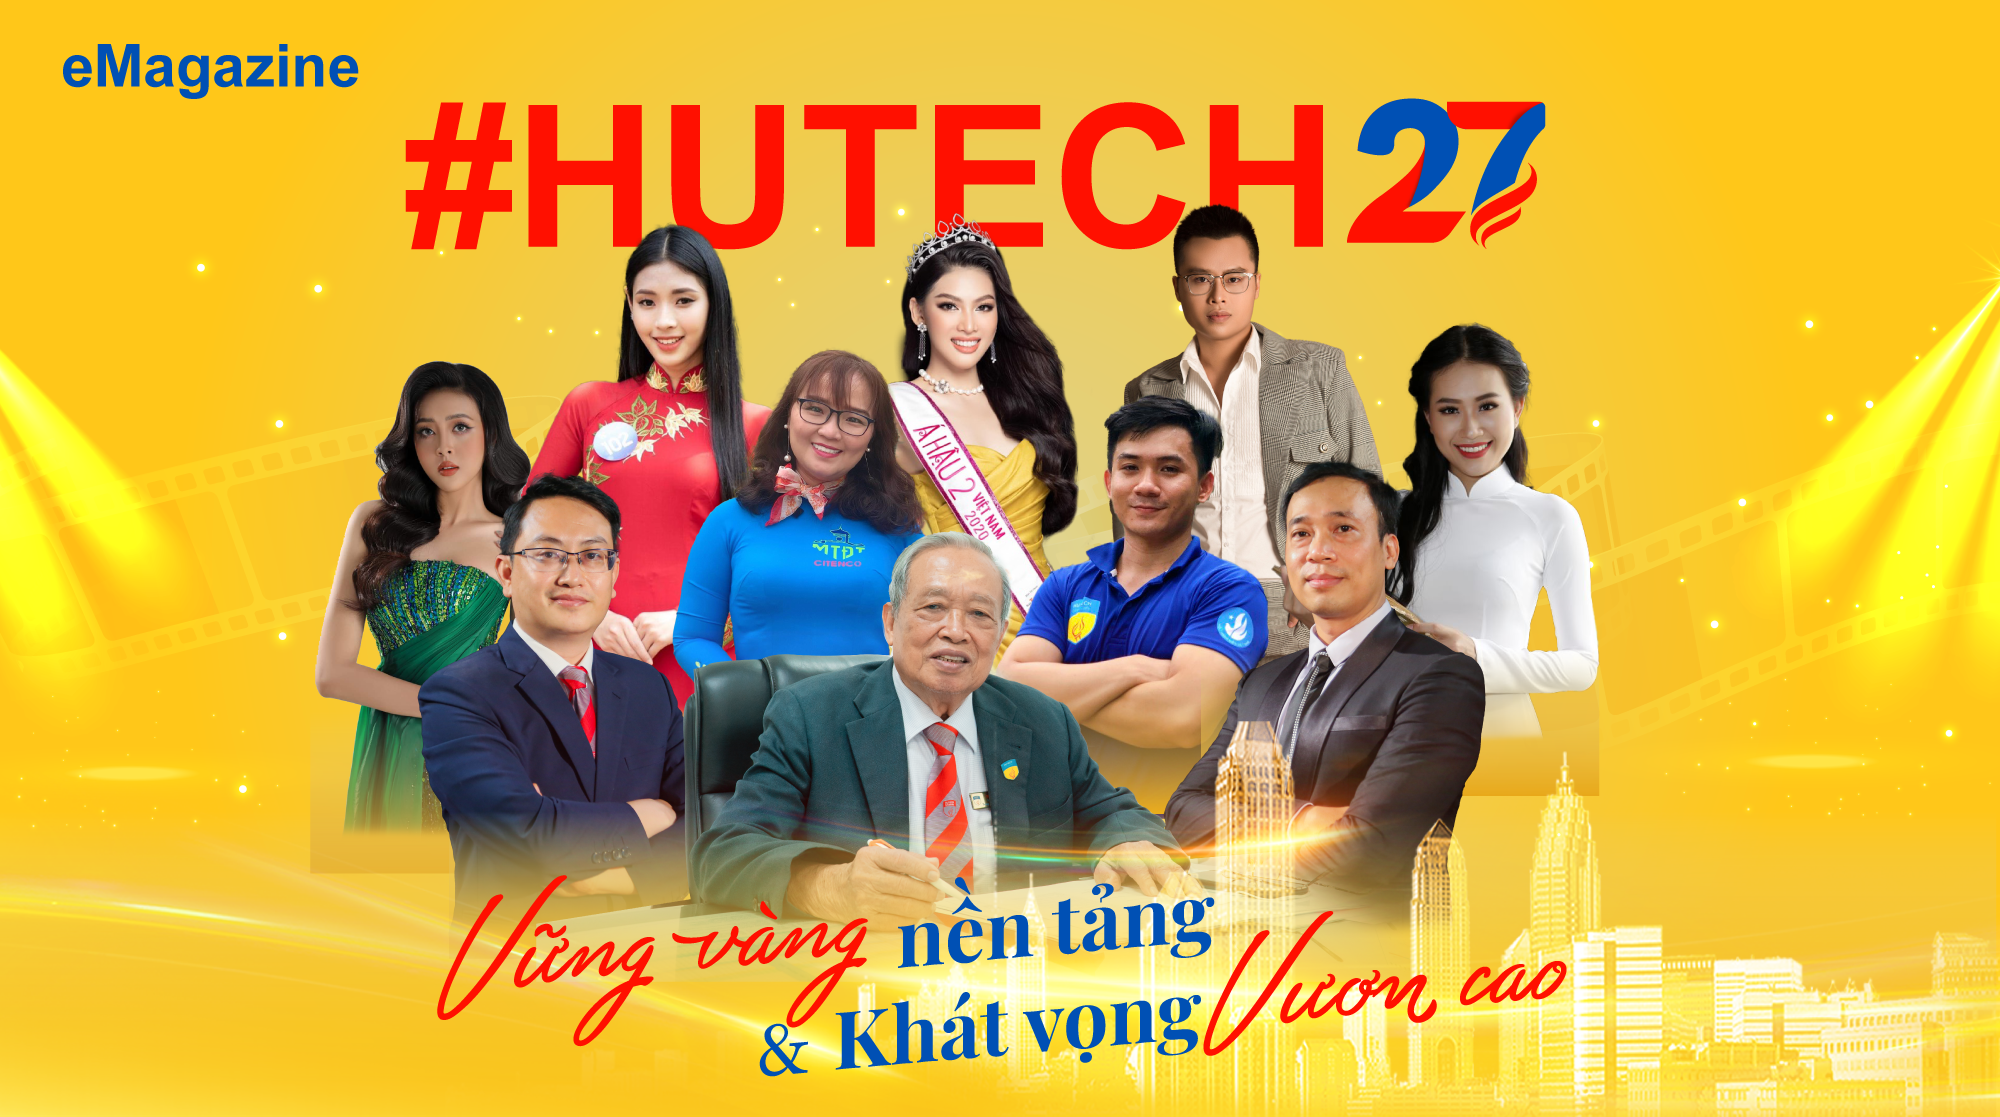 #HUTECH27: VỮNG VÀNG nền tảng & Khát vọng VƯƠN CAO 2